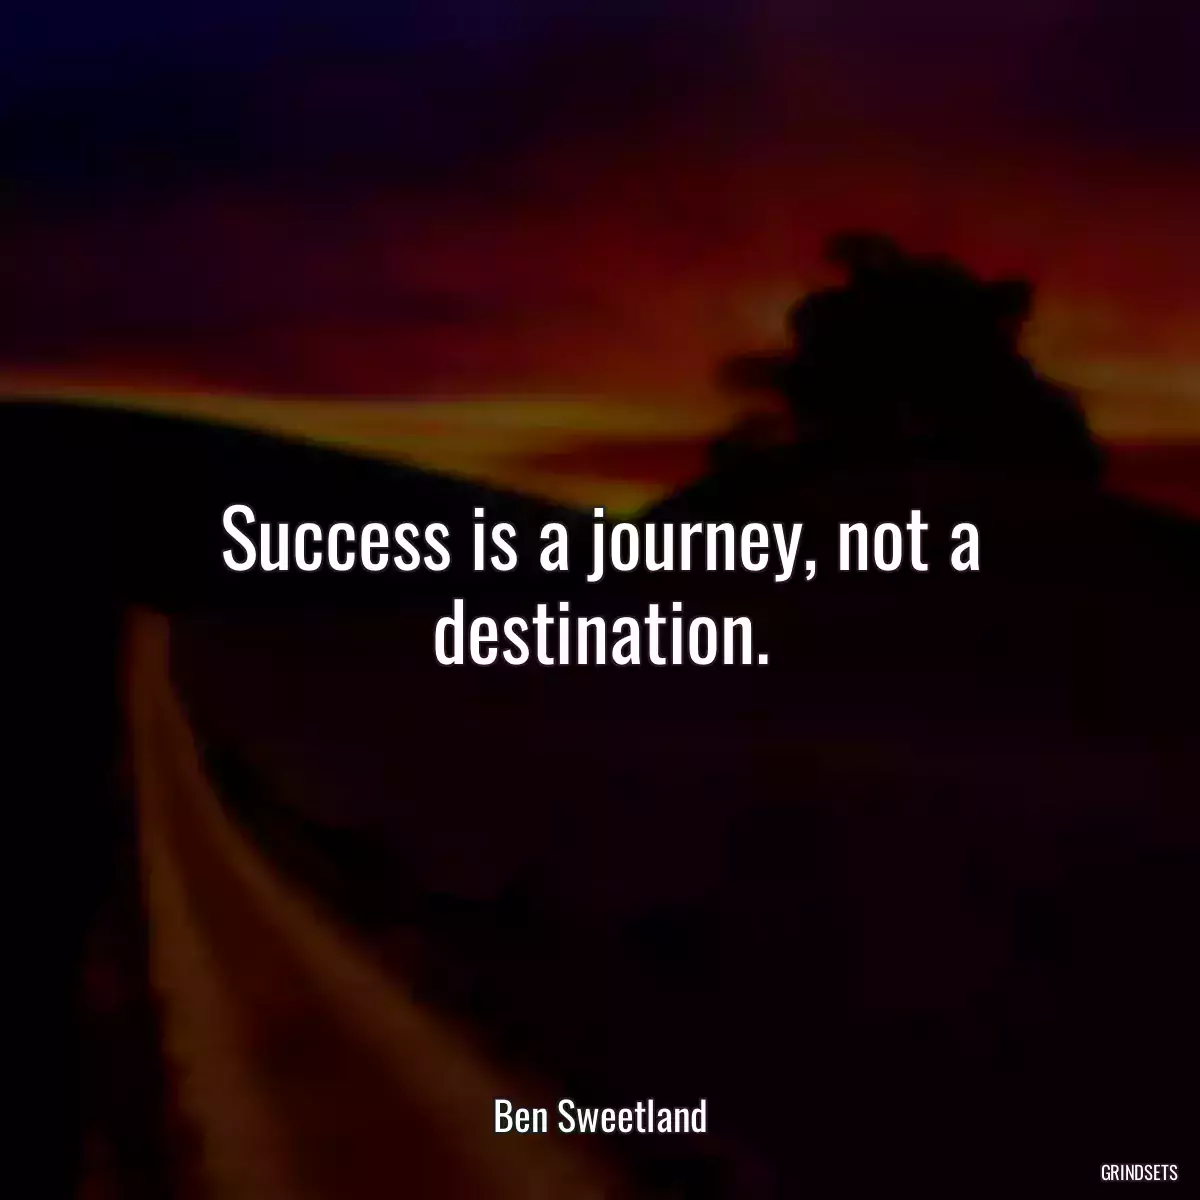 Success is a journey, not a destination.